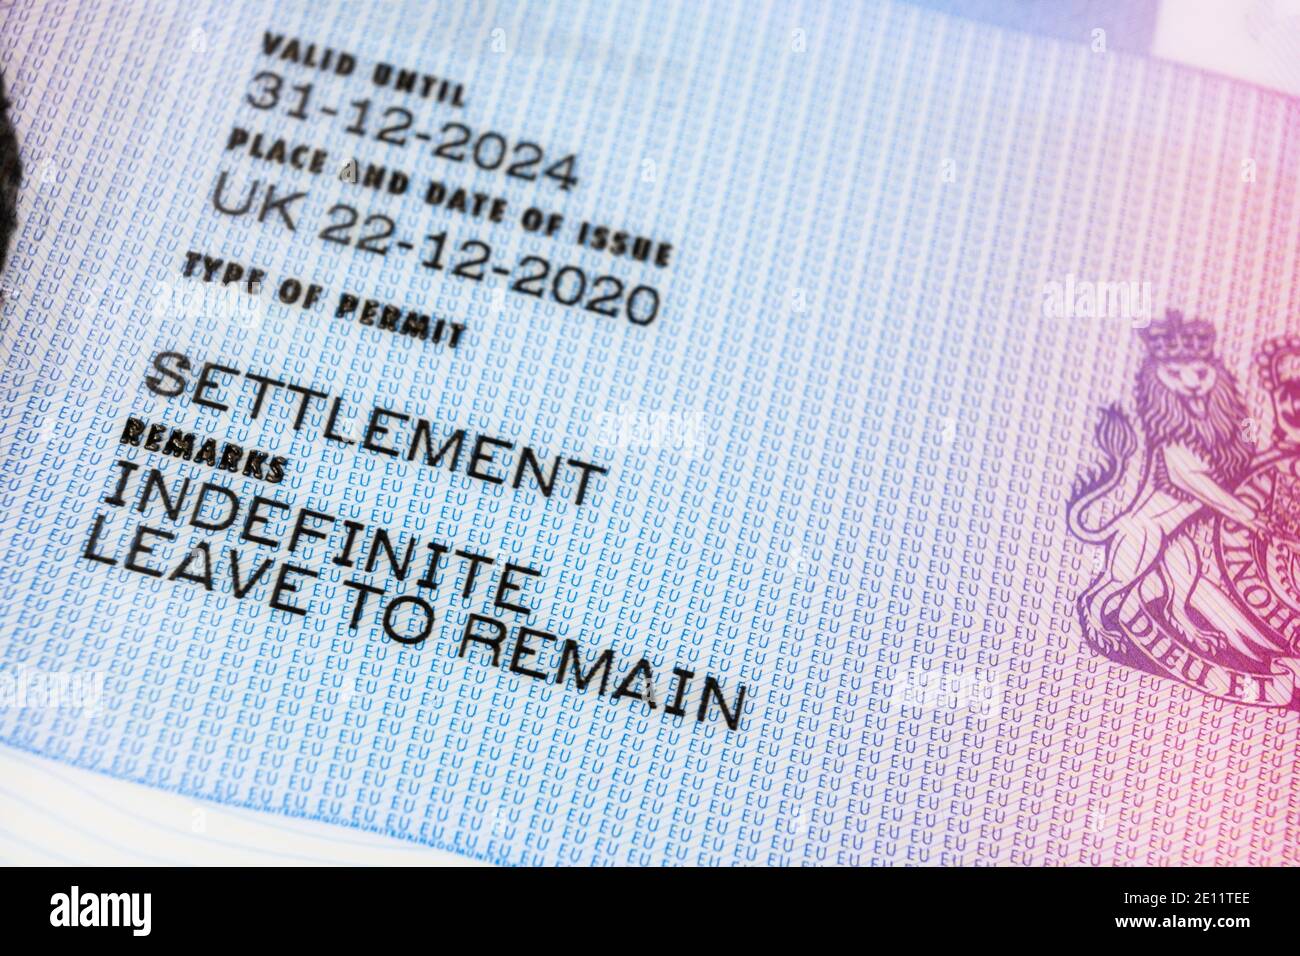 Stafford, Vereinigtes Königreich - 3. Januar 2021: Im Vereinigten Königreich ausgestellte Visa-Karten für unbefristete Aufenthaltserlaubnis (ILR). Unbefristete Verbleib (ILR) oder Perman Stockfoto